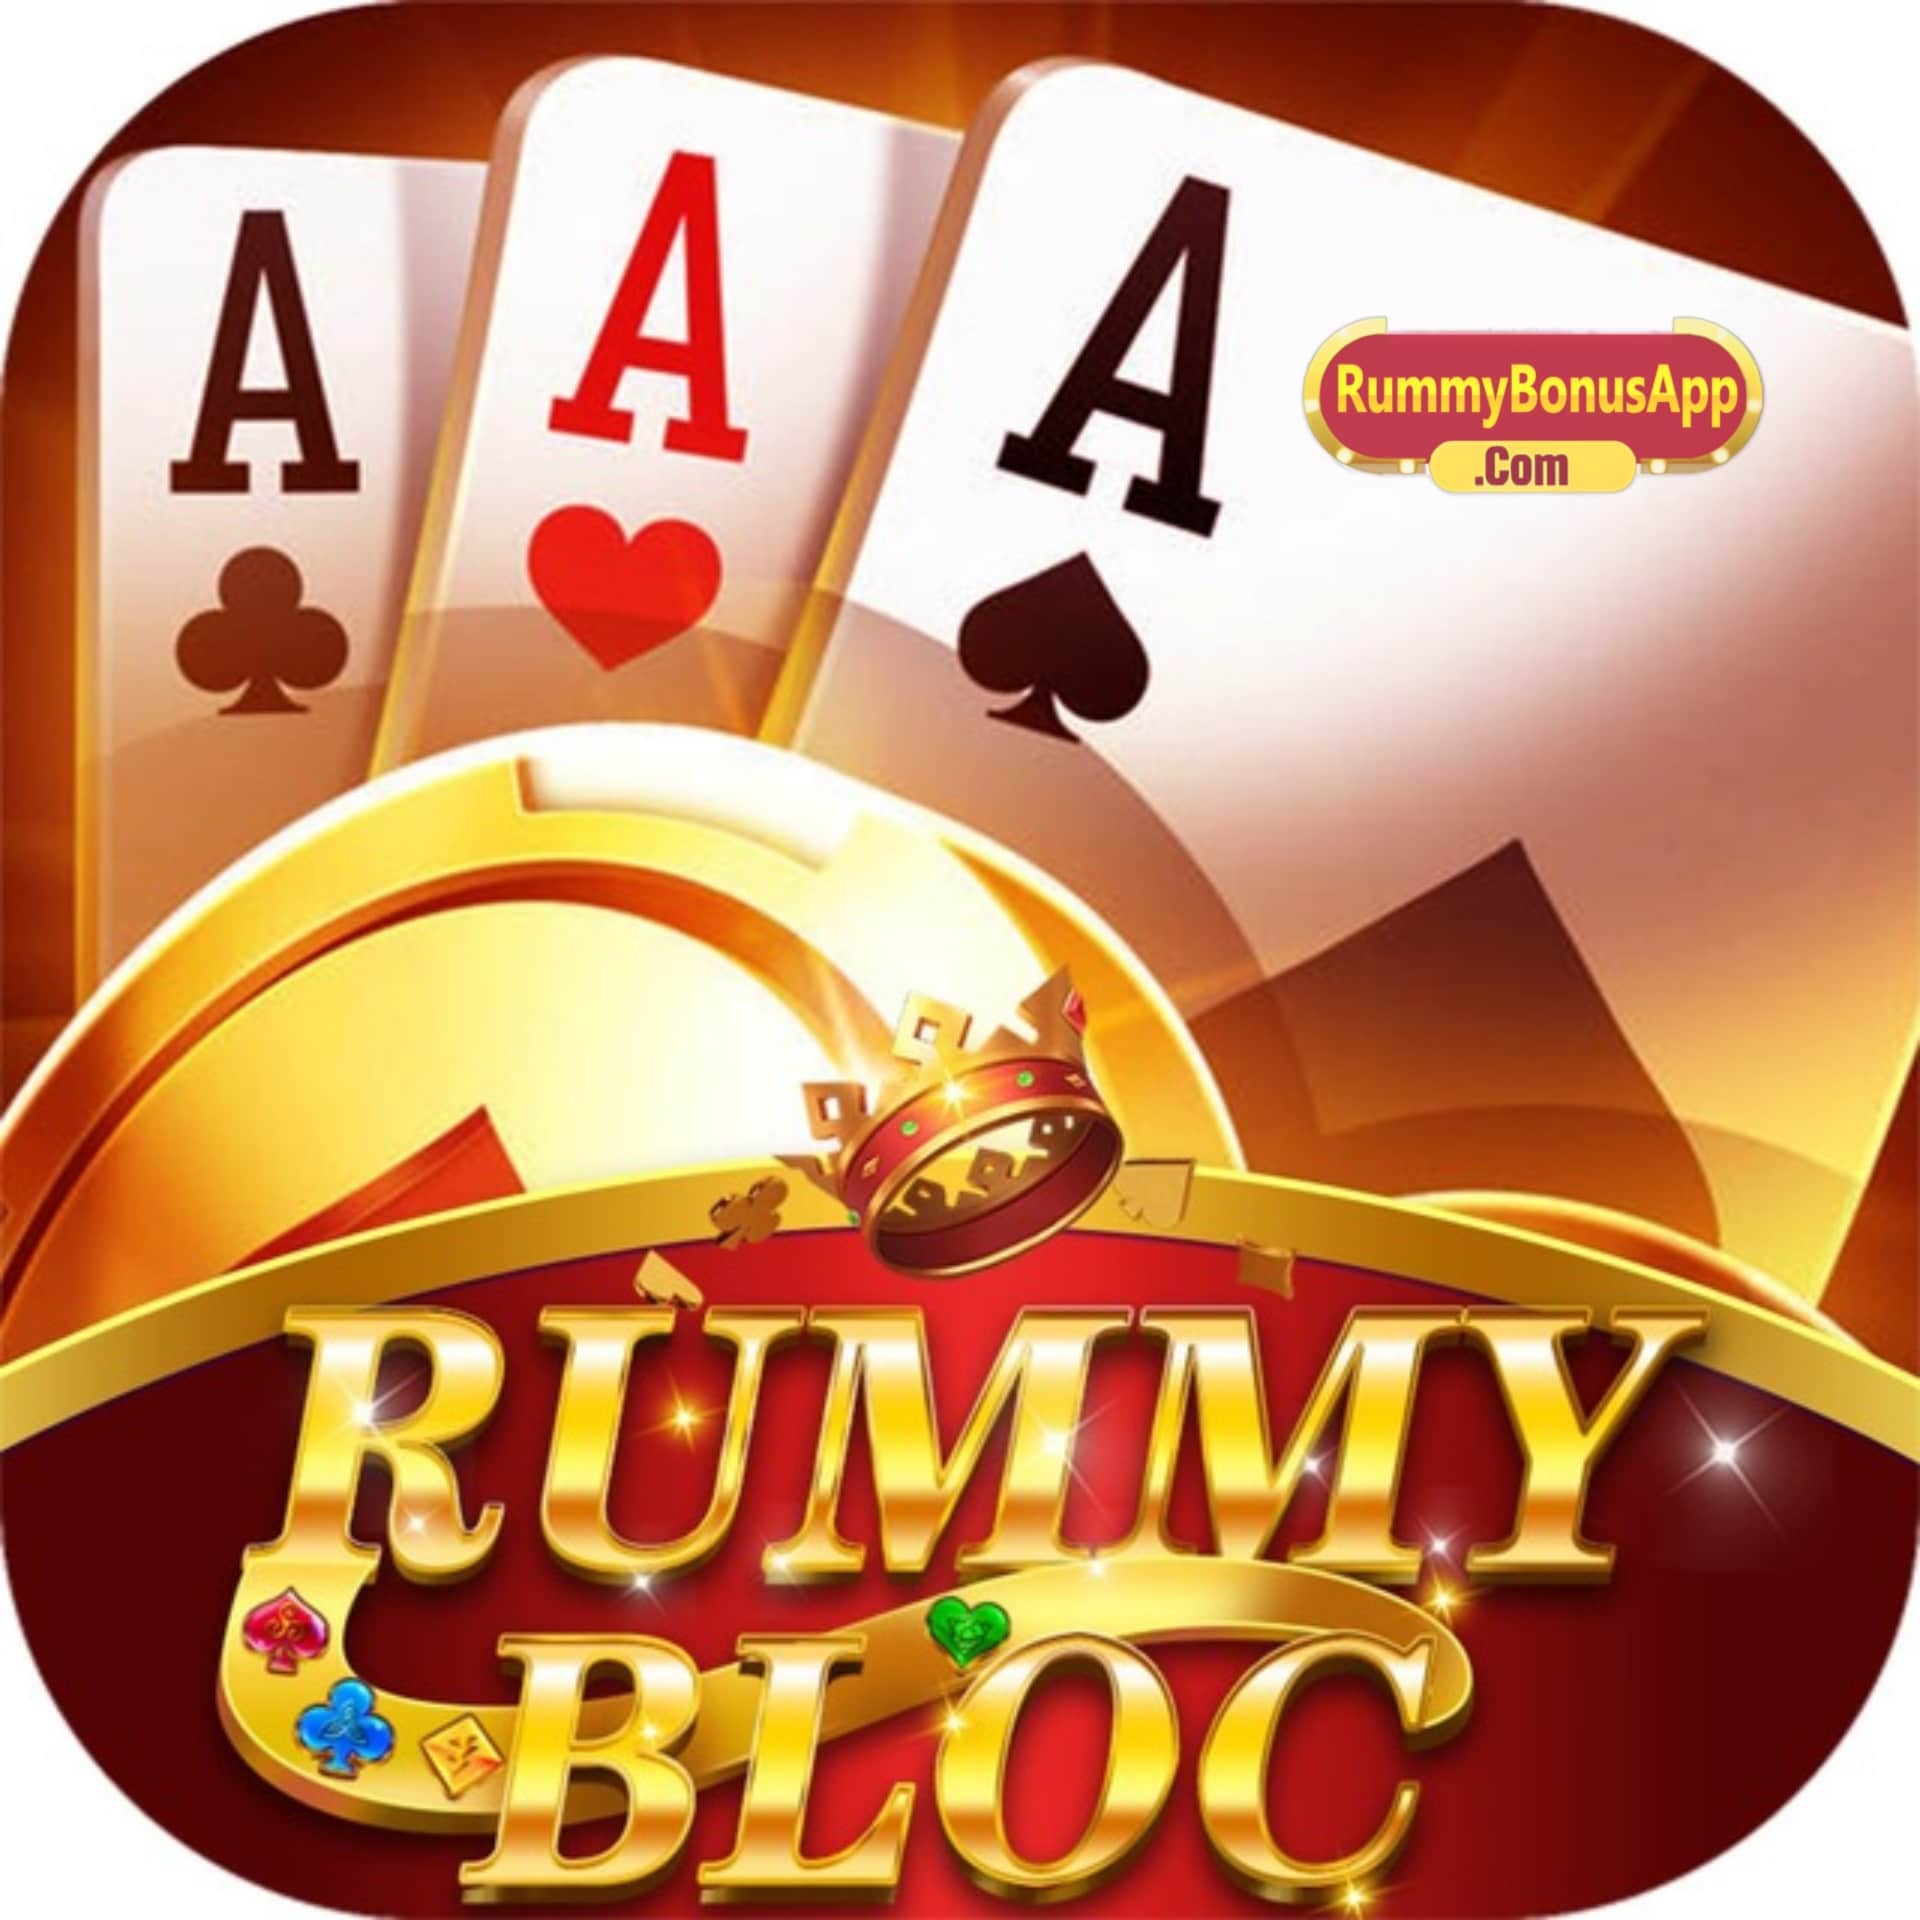 Rummy Bloc - All Rummy App - All Rummy Apps - RummyBonusApp